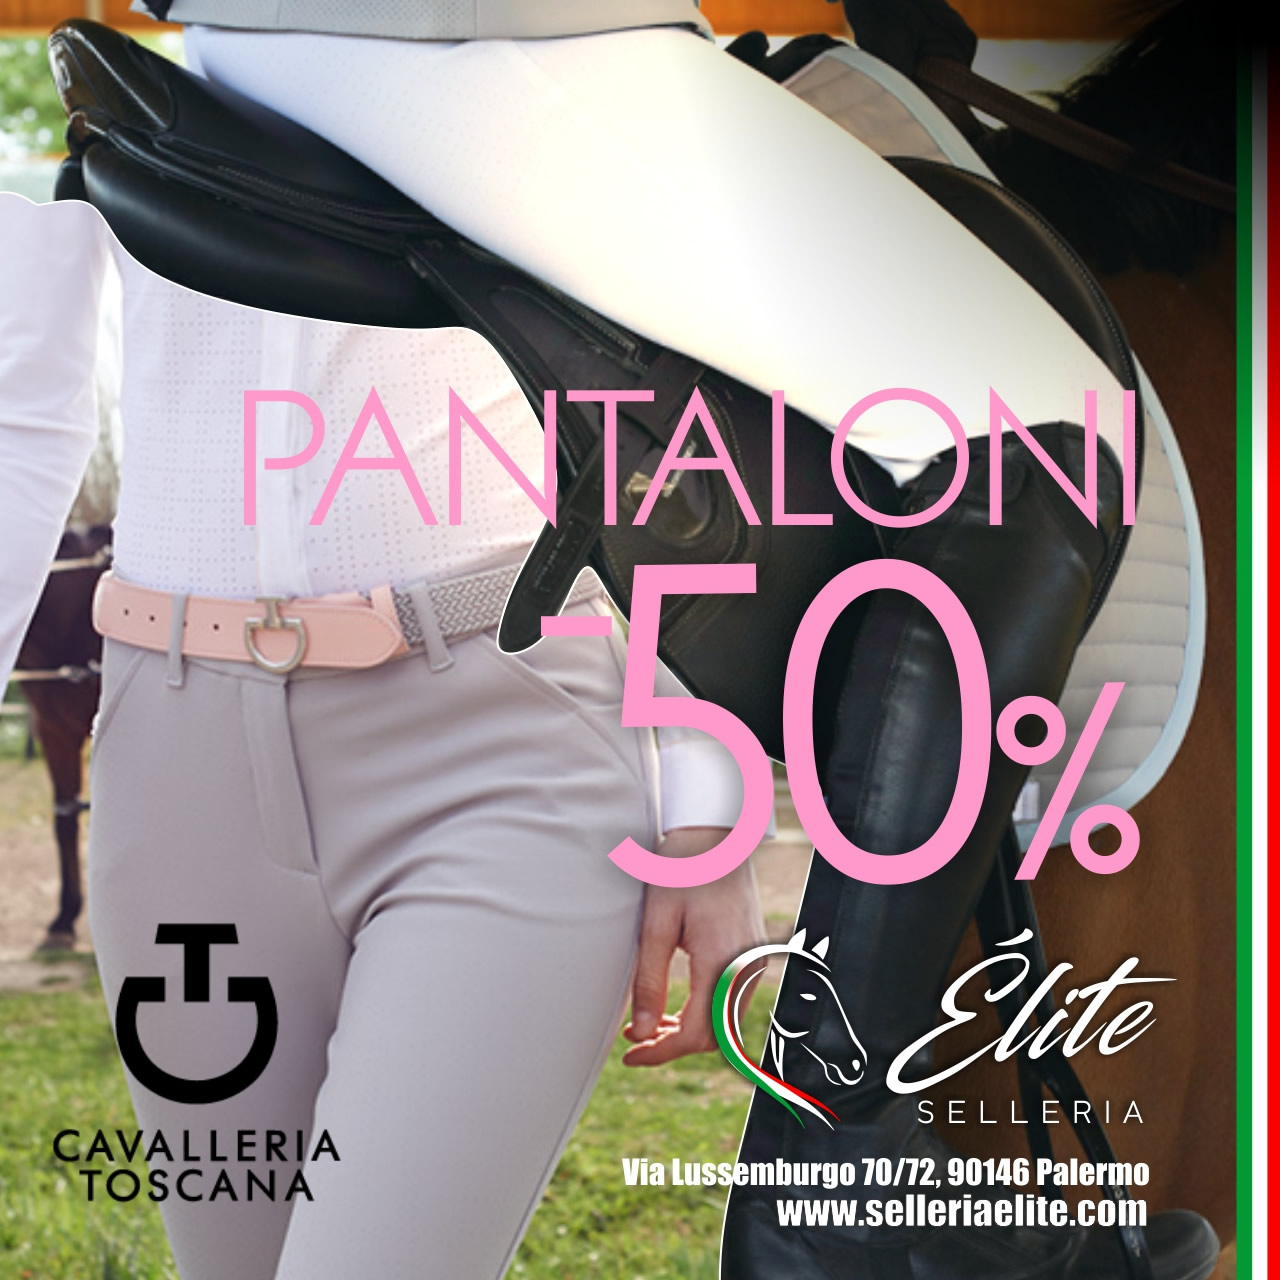 Visualizza la promozione Pantaloni Cavalleria Toscana -50%